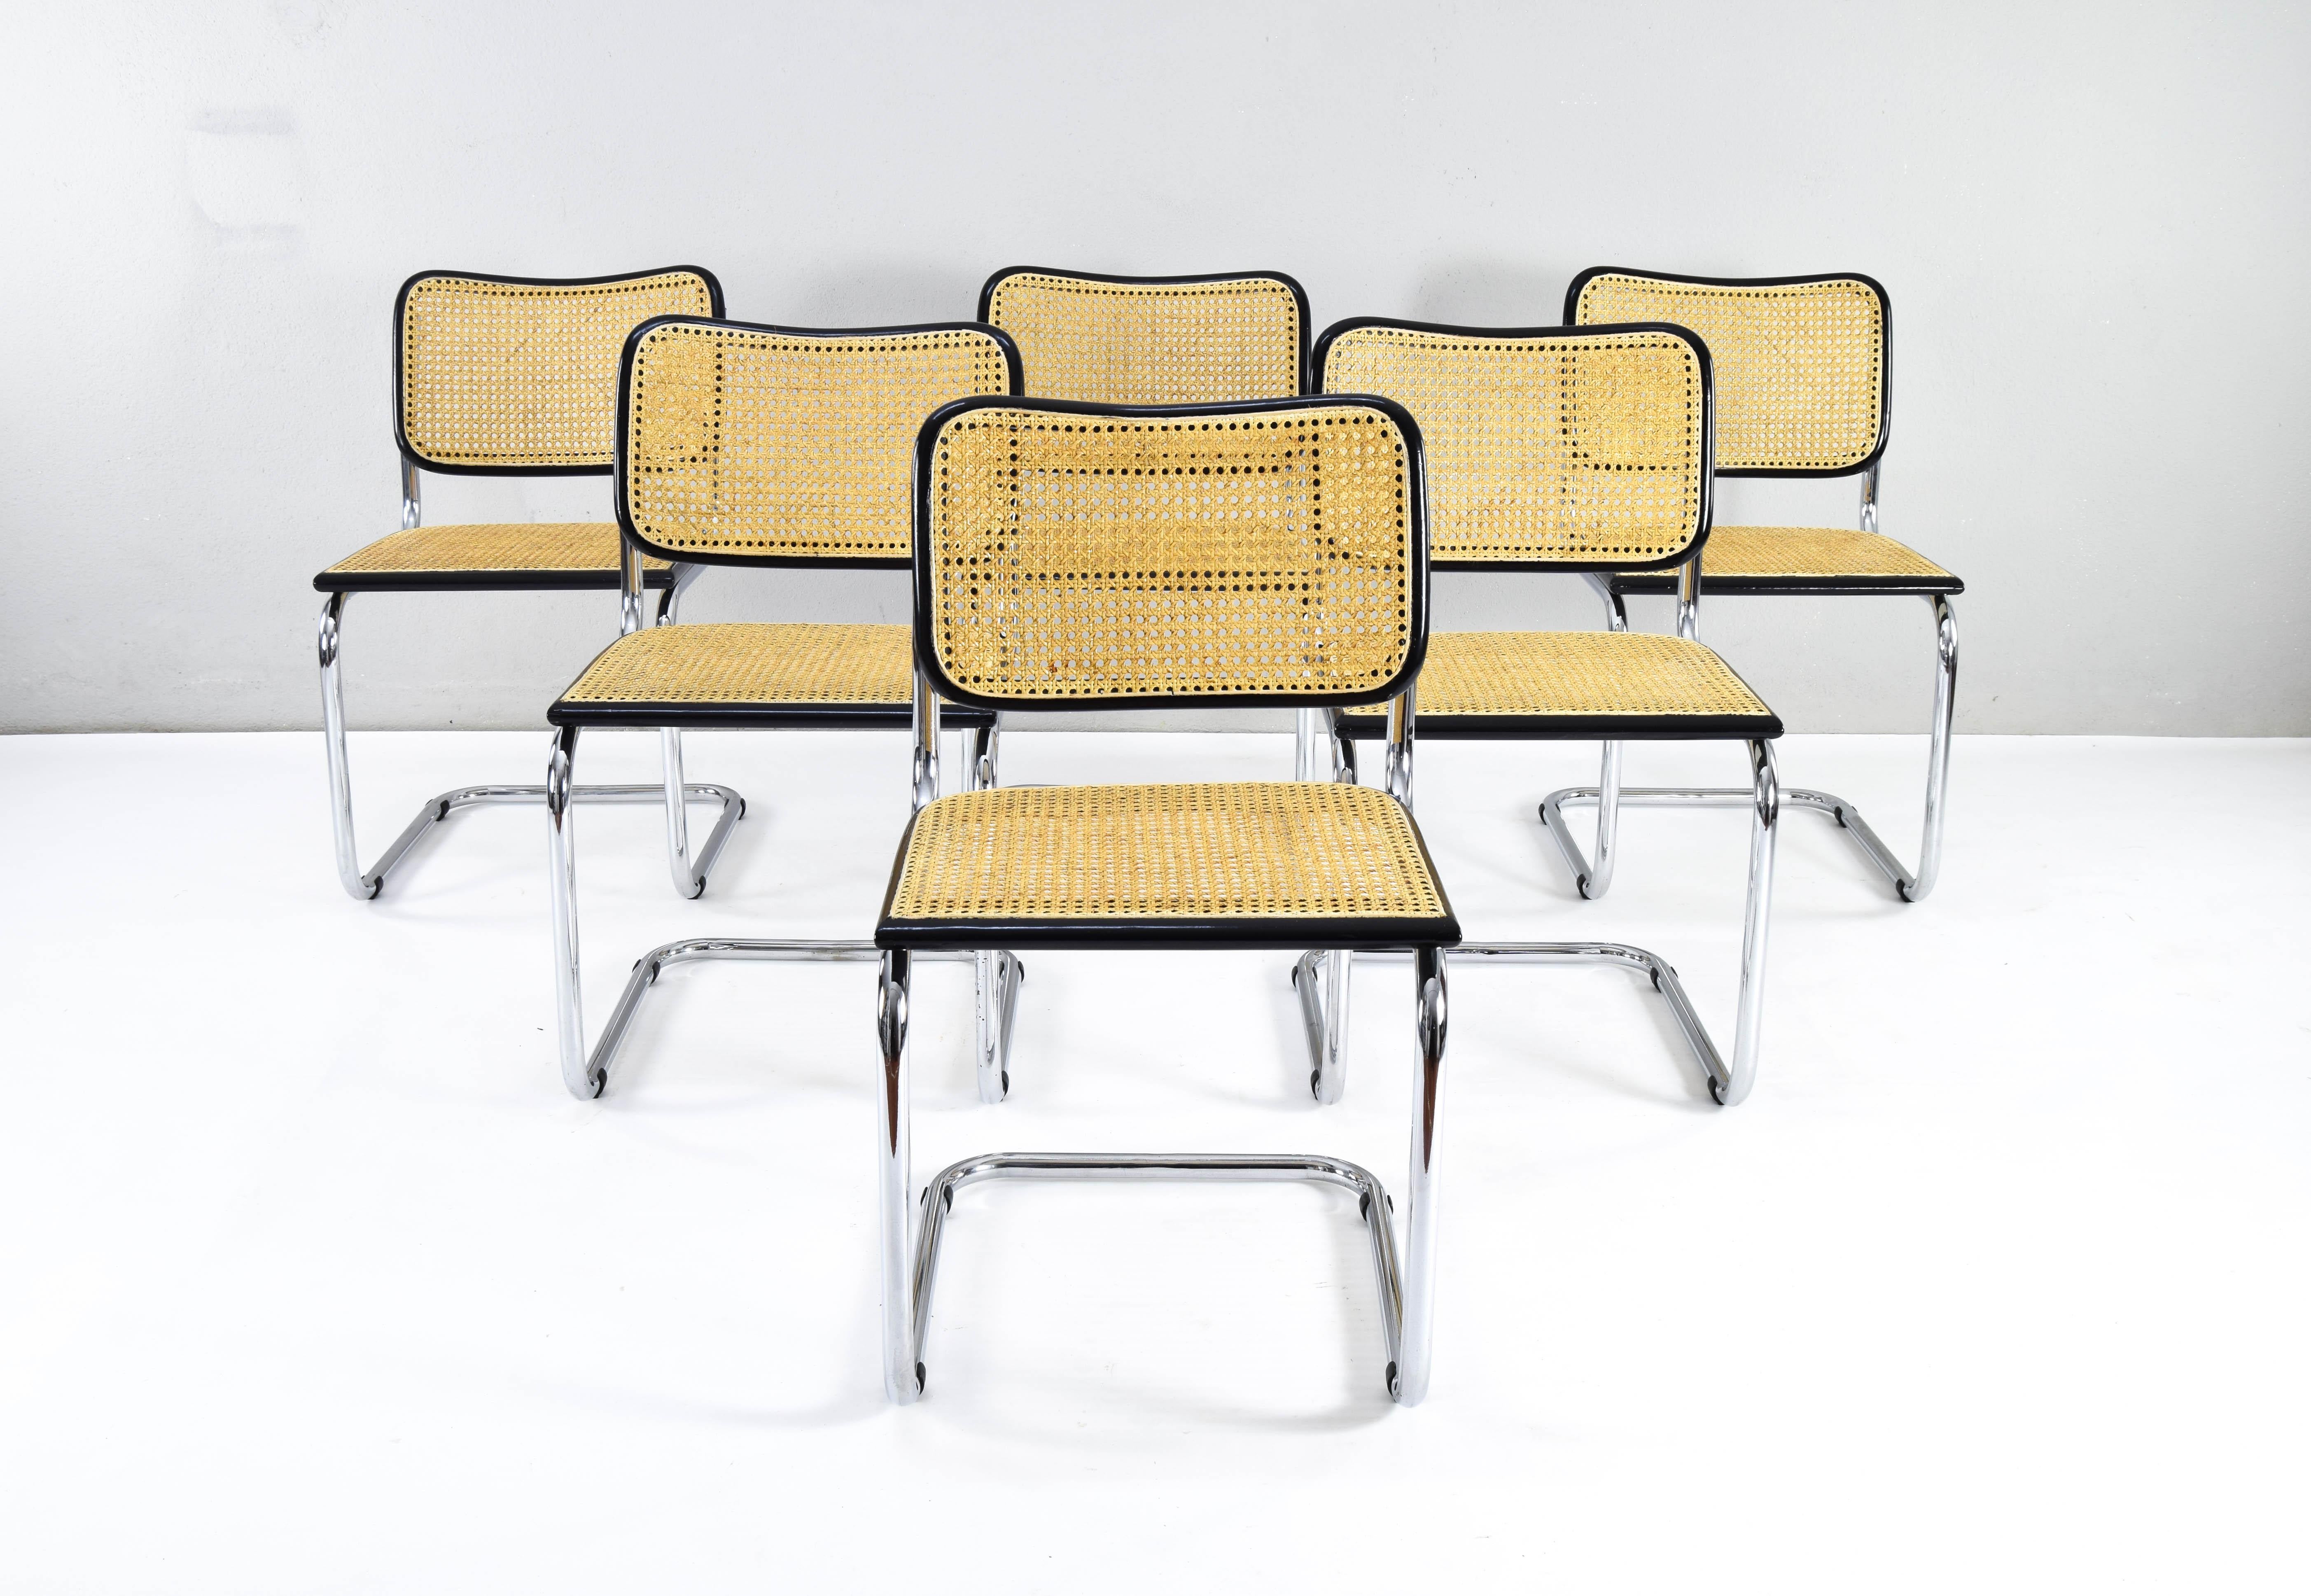 Satz von sechs Cesca-Stühlen, Modell B32, hergestellt in Italien in den 1970er Jahren.
Einige weisen Abnutzungserscheinungen am Chrom auf, aber im Allgemeinen sind sie in gutem Zustand. 
Schwarz lackierte Buchenholzrahmen und natürliches Wiener